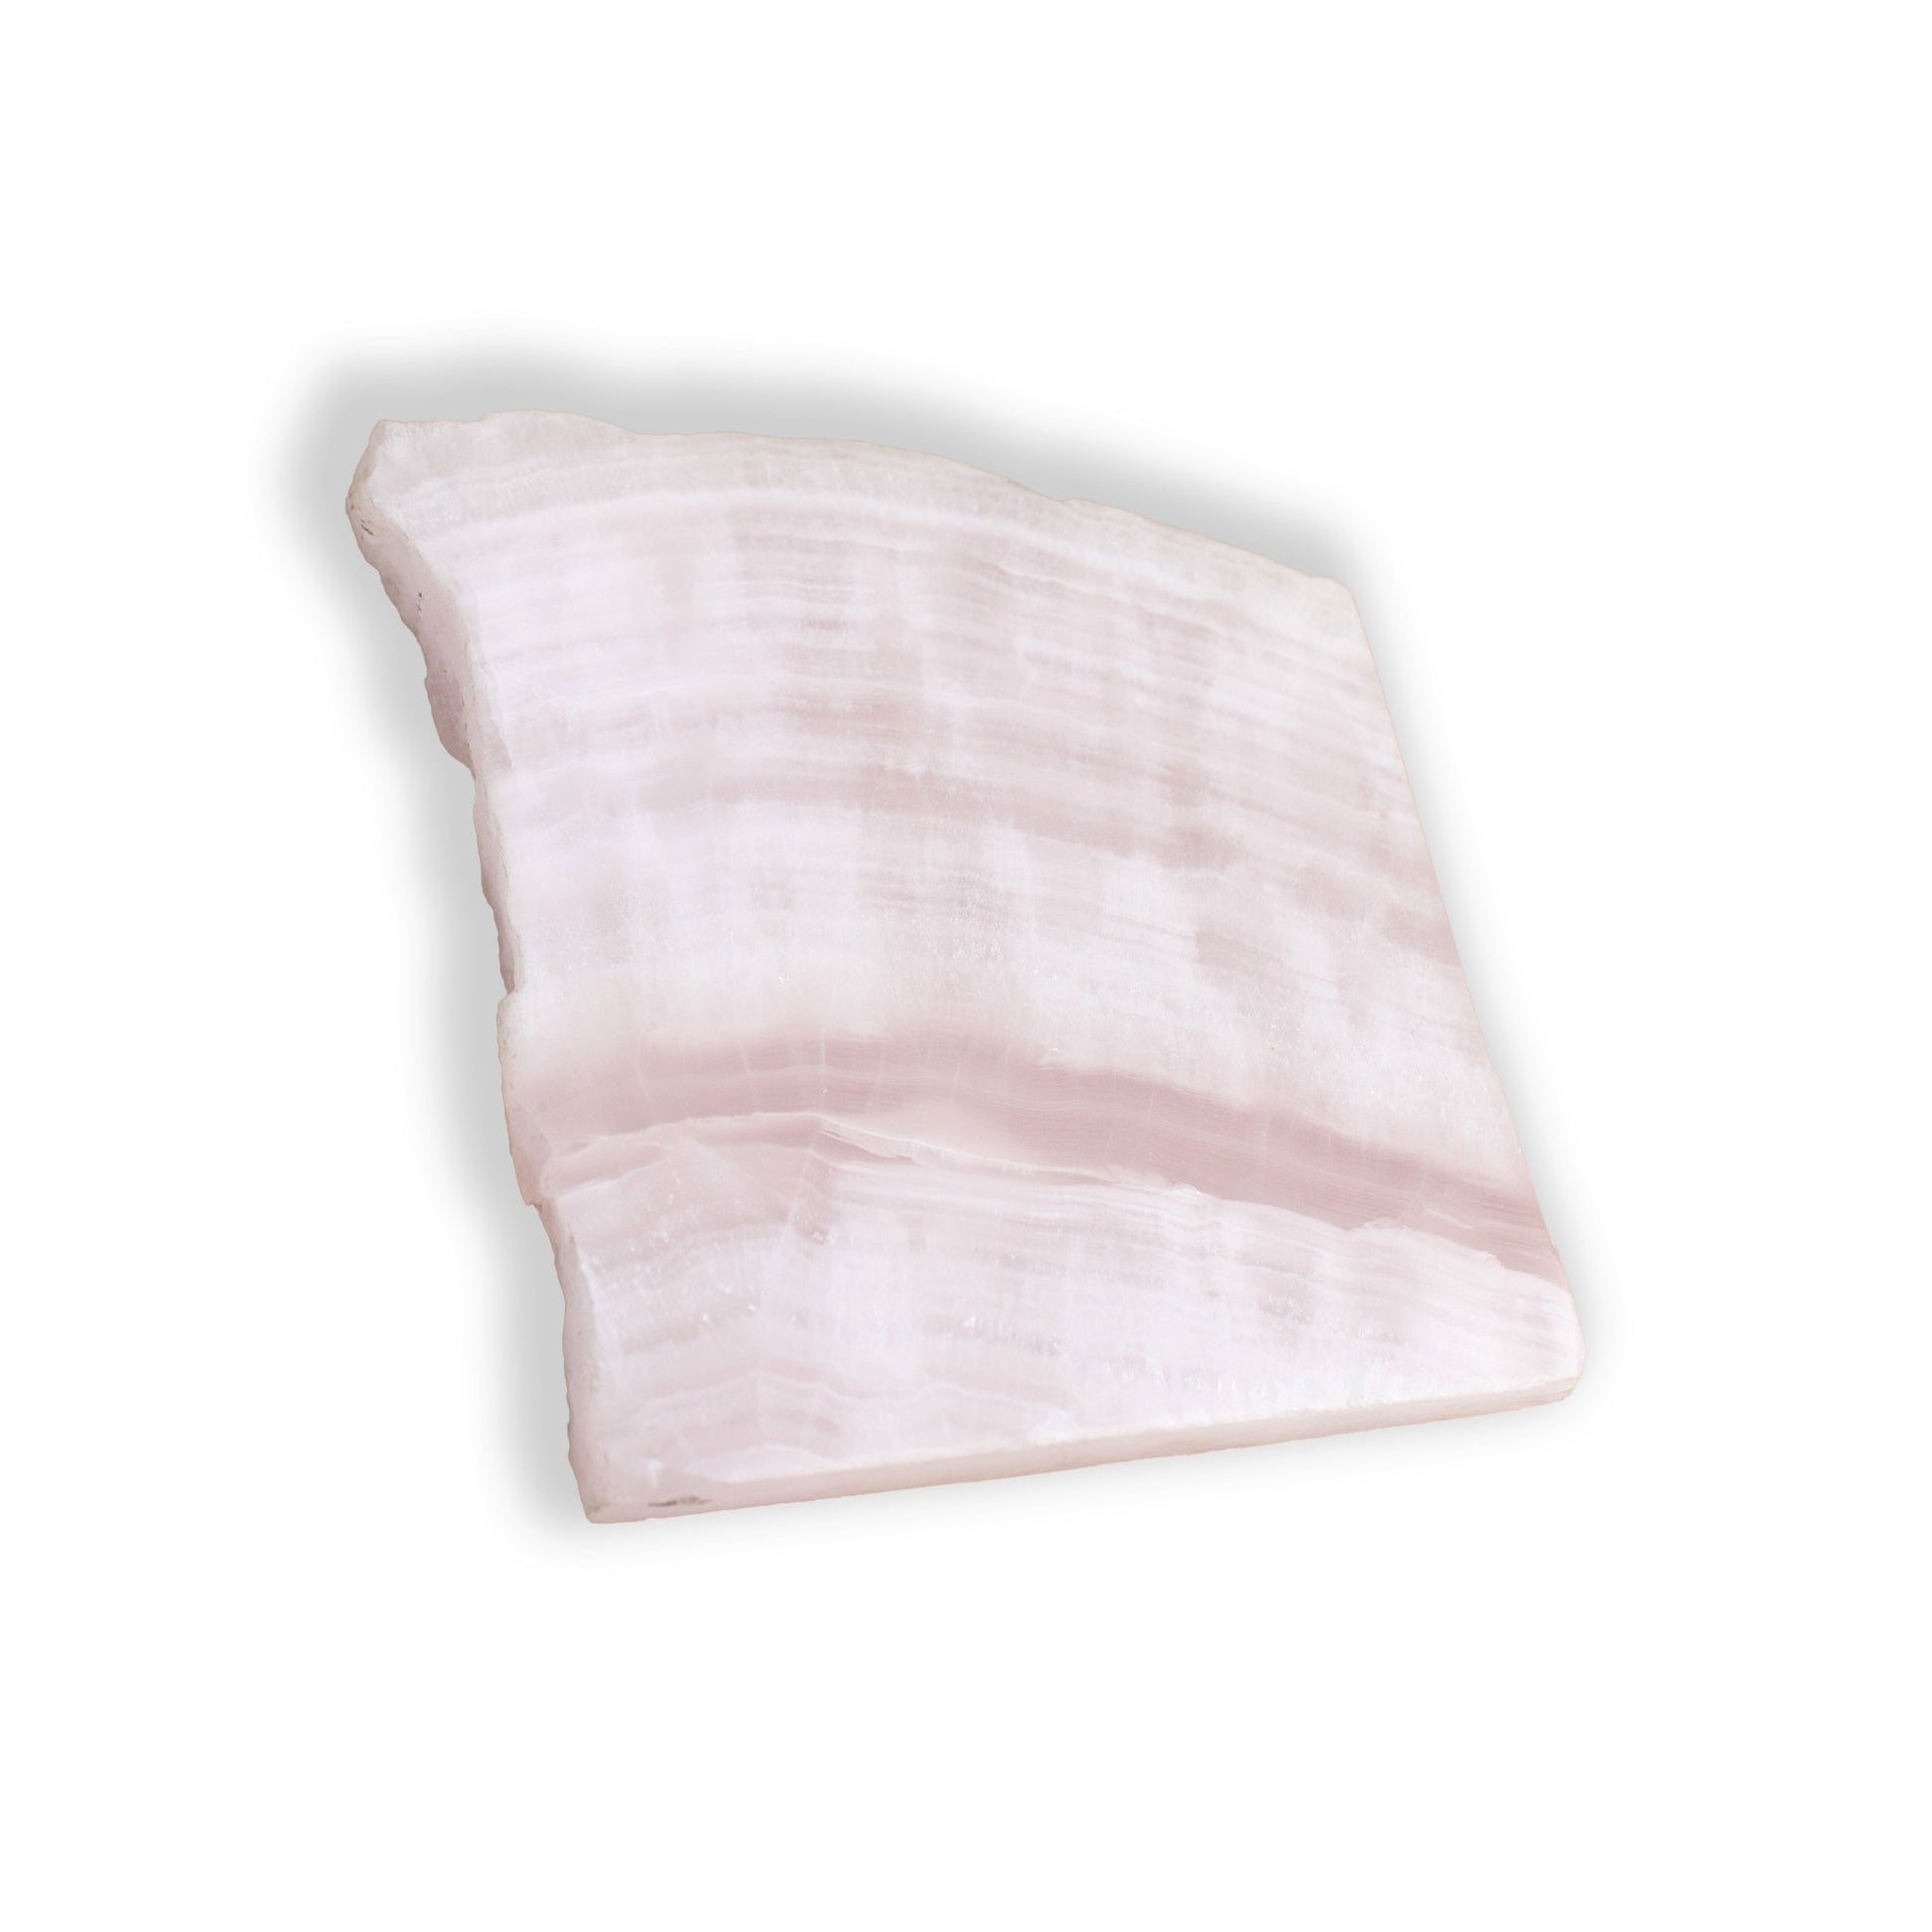 Pink Mangano Calcite - Unique Specimen Slab #1 - Muse + Moonstone